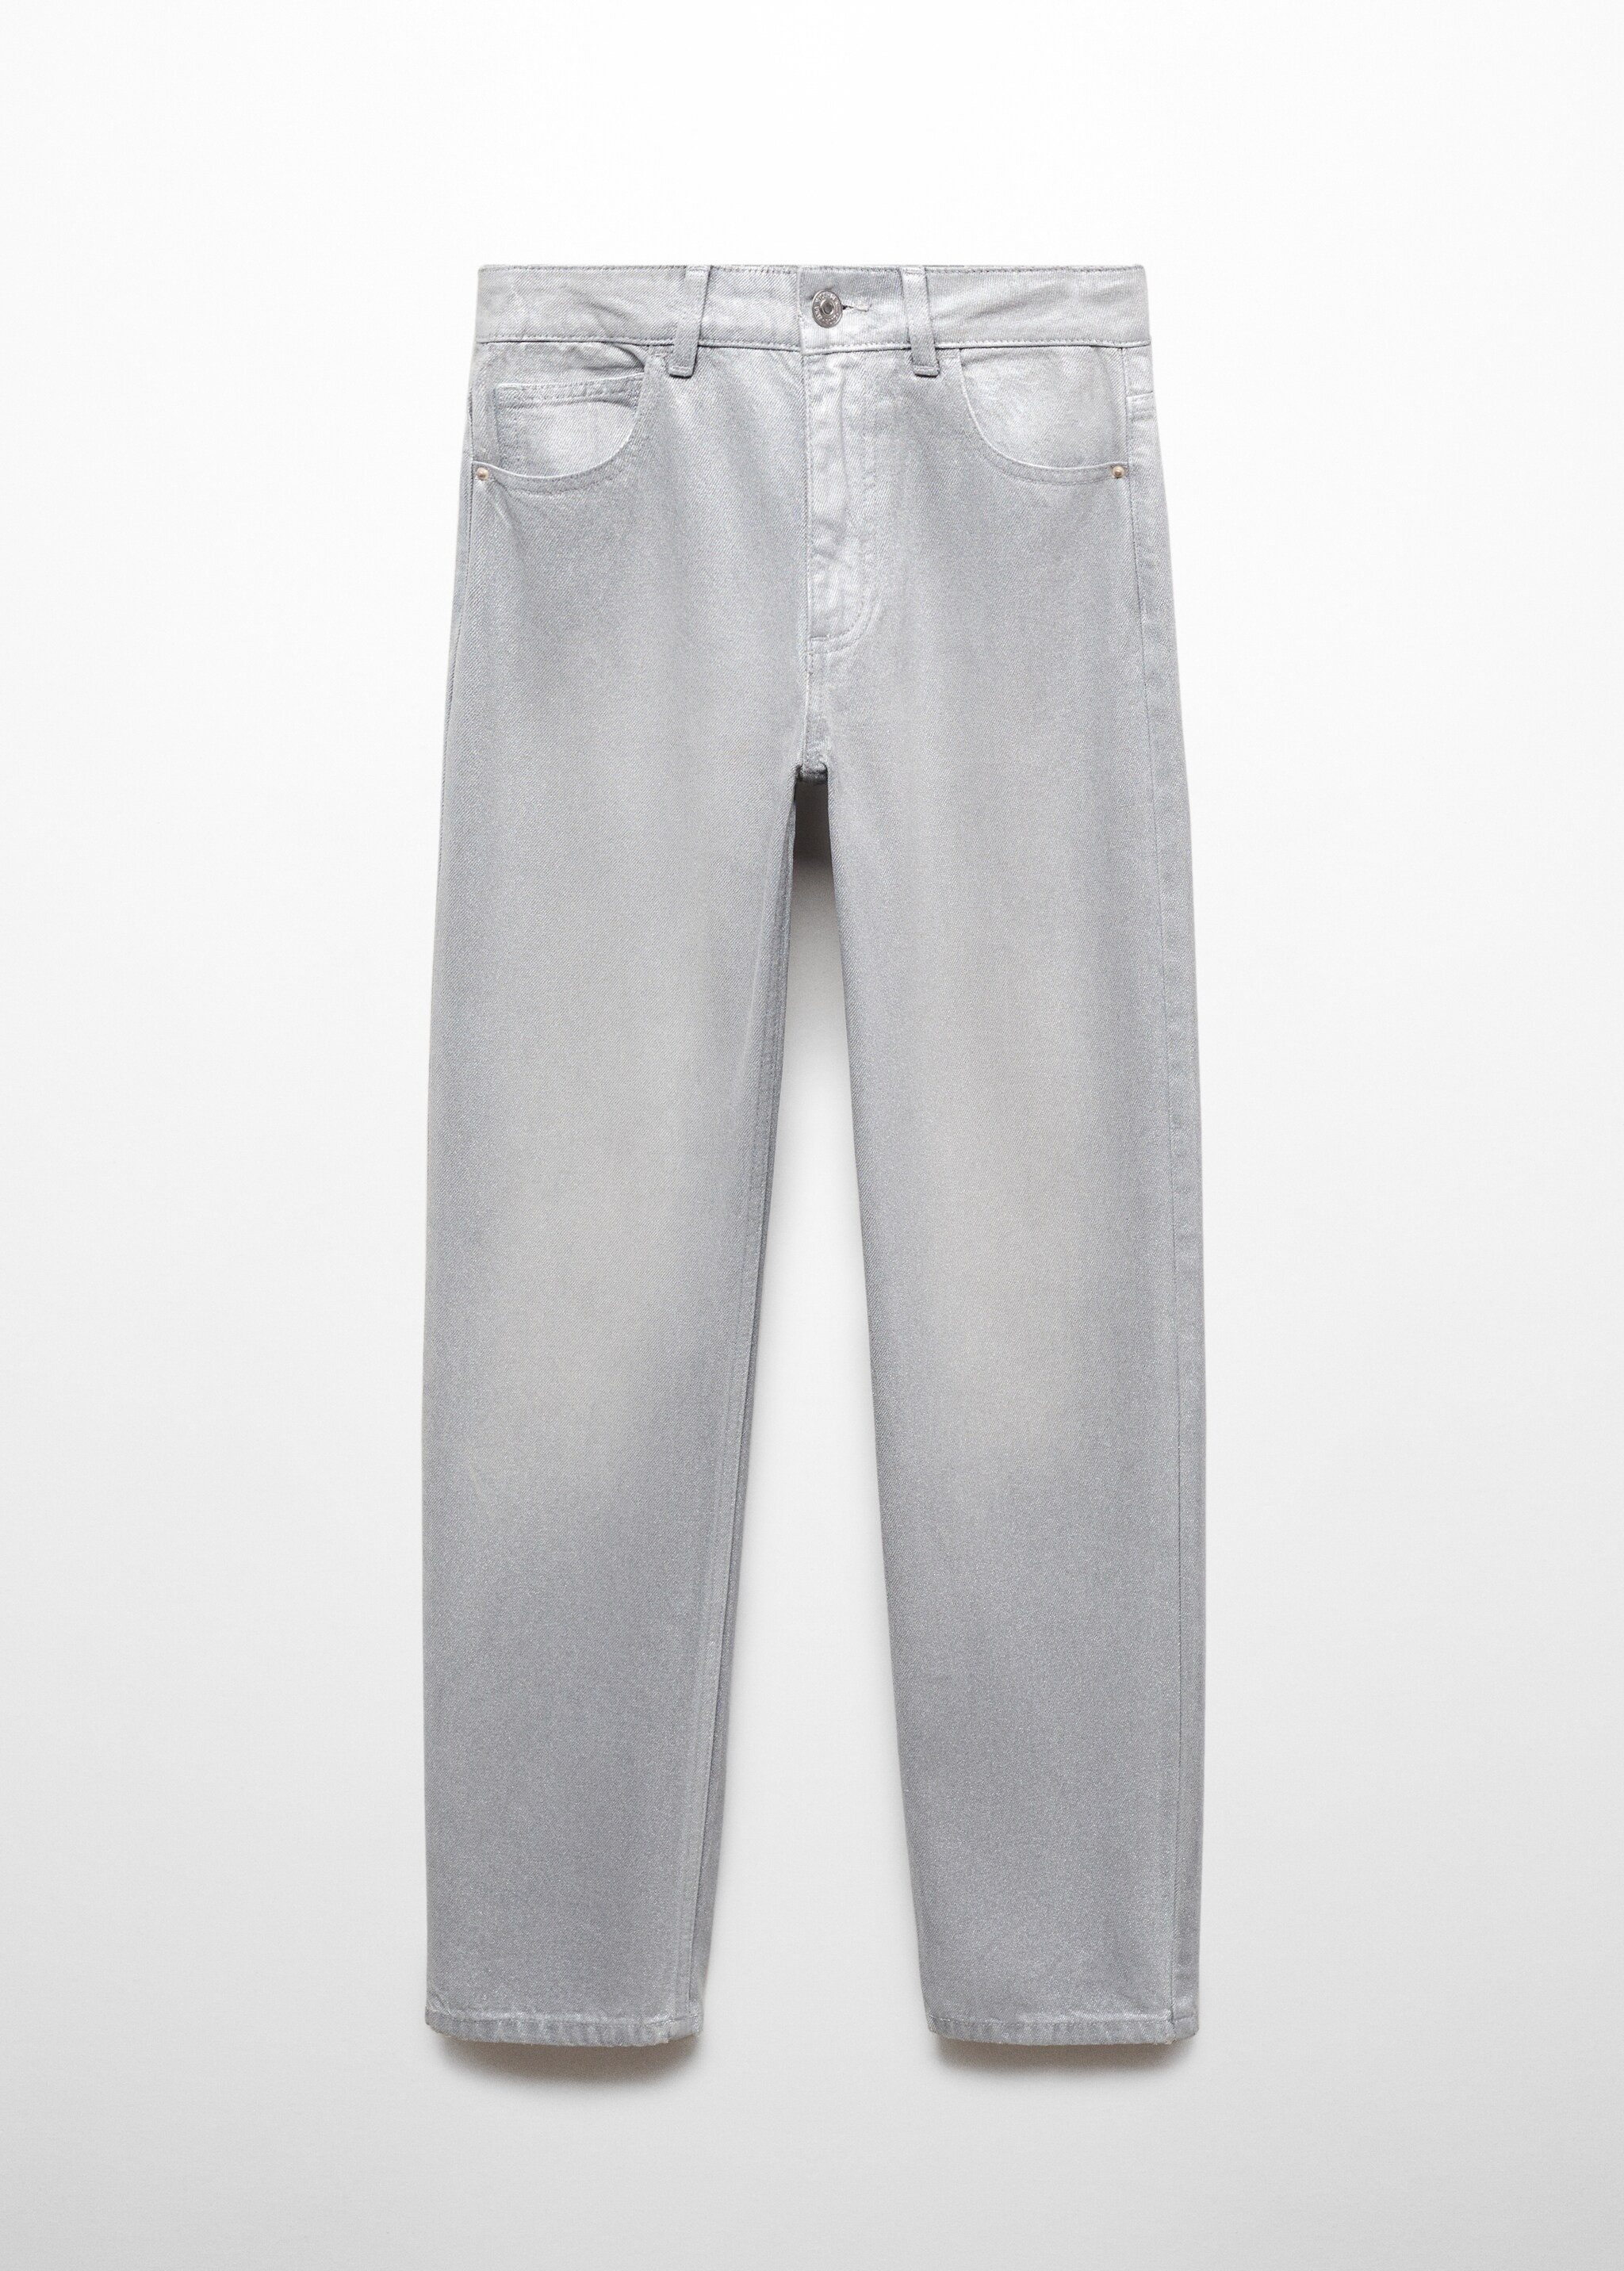 Jeans regular fit metalizados - Artículo sin modelo